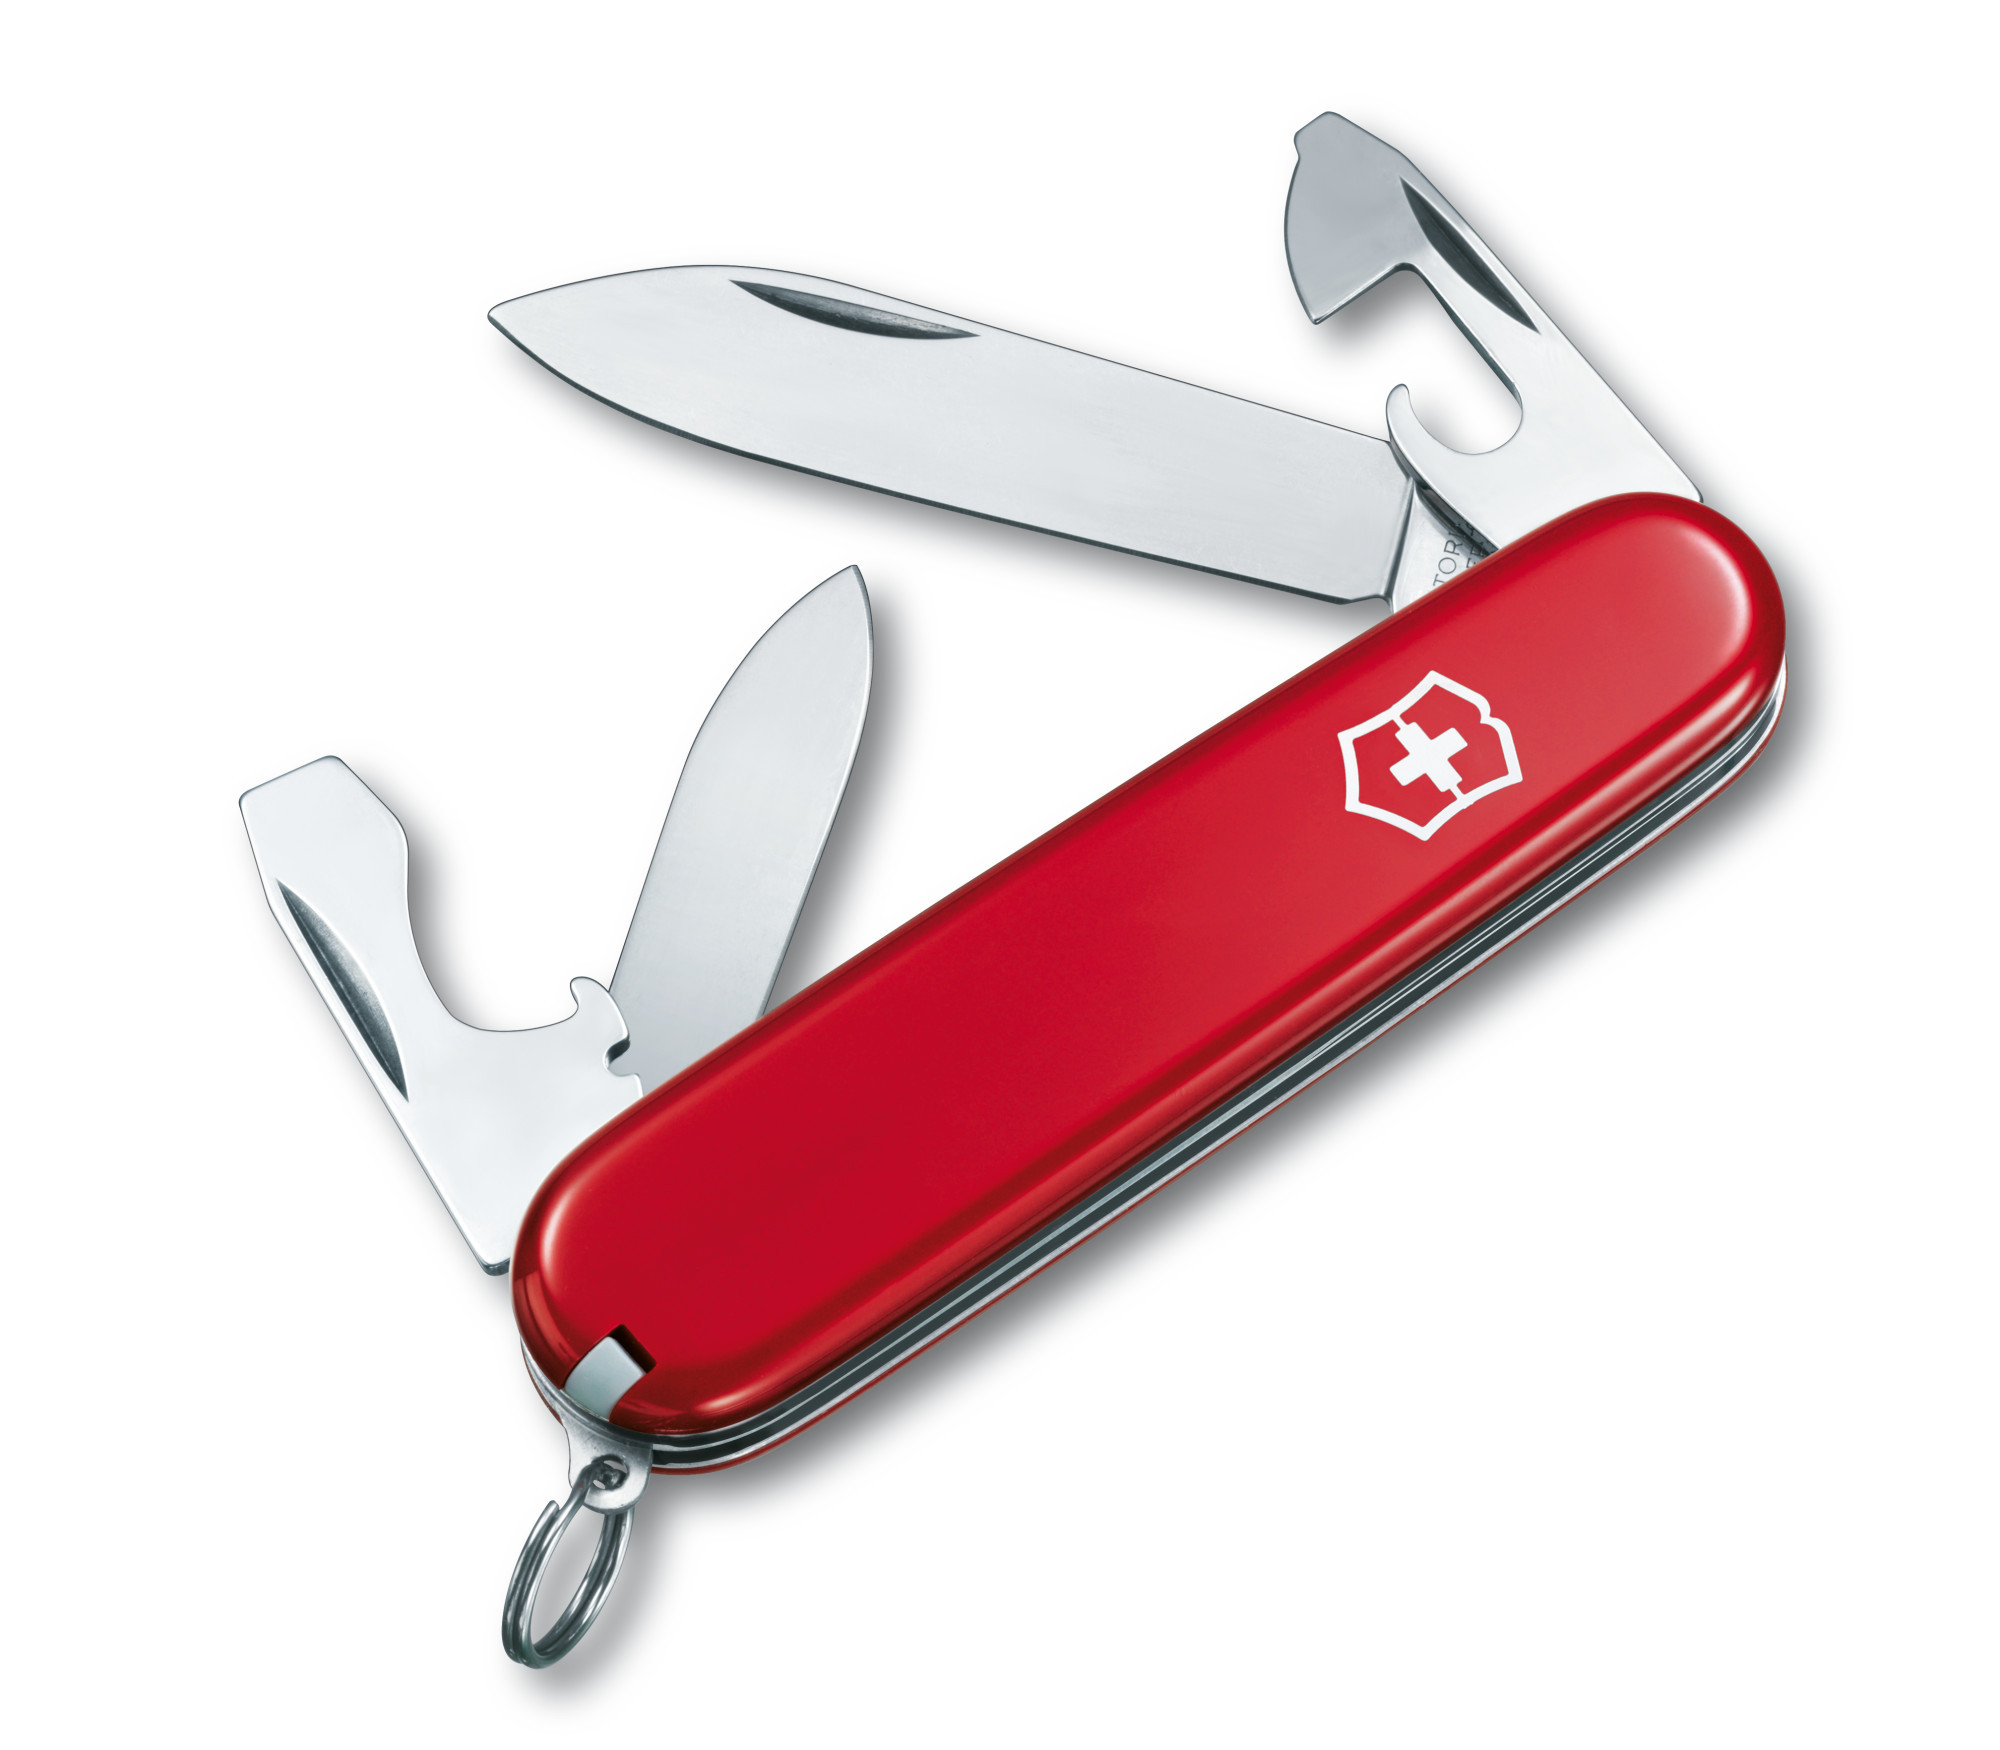 Нож Victorinox Recruit Red 84мм/10предм (0.2503)